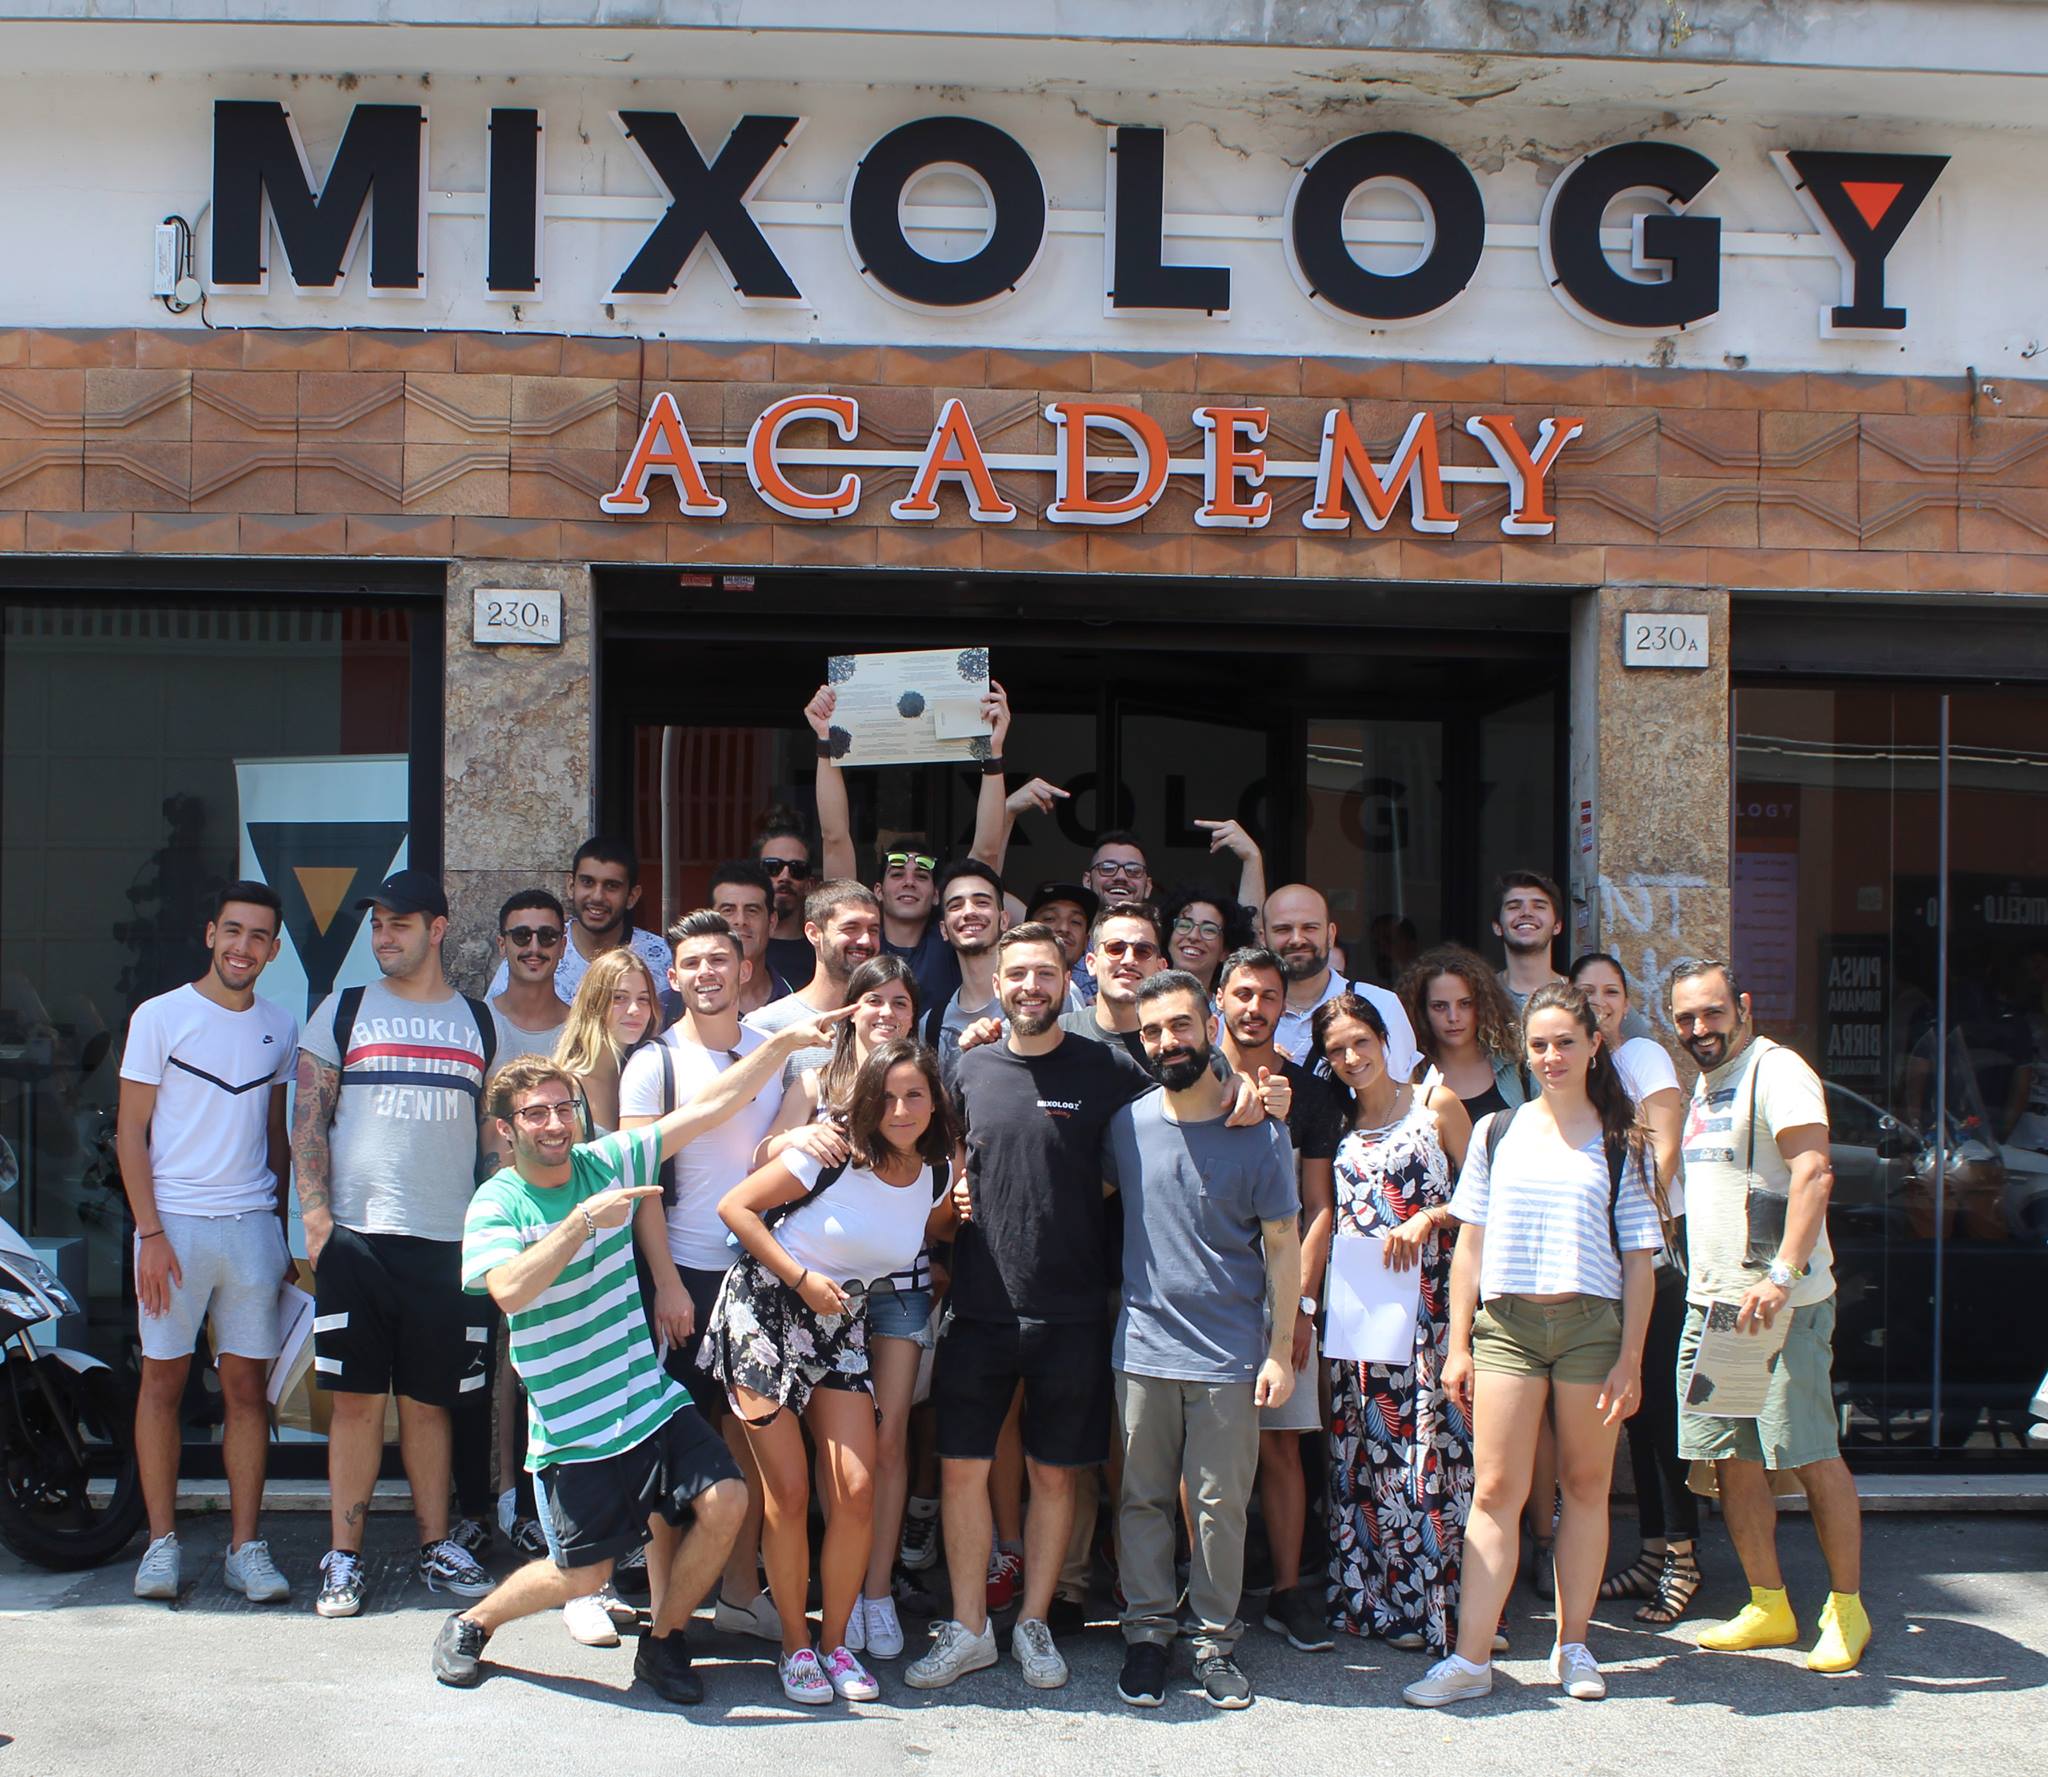 MIXOLOGY Academy